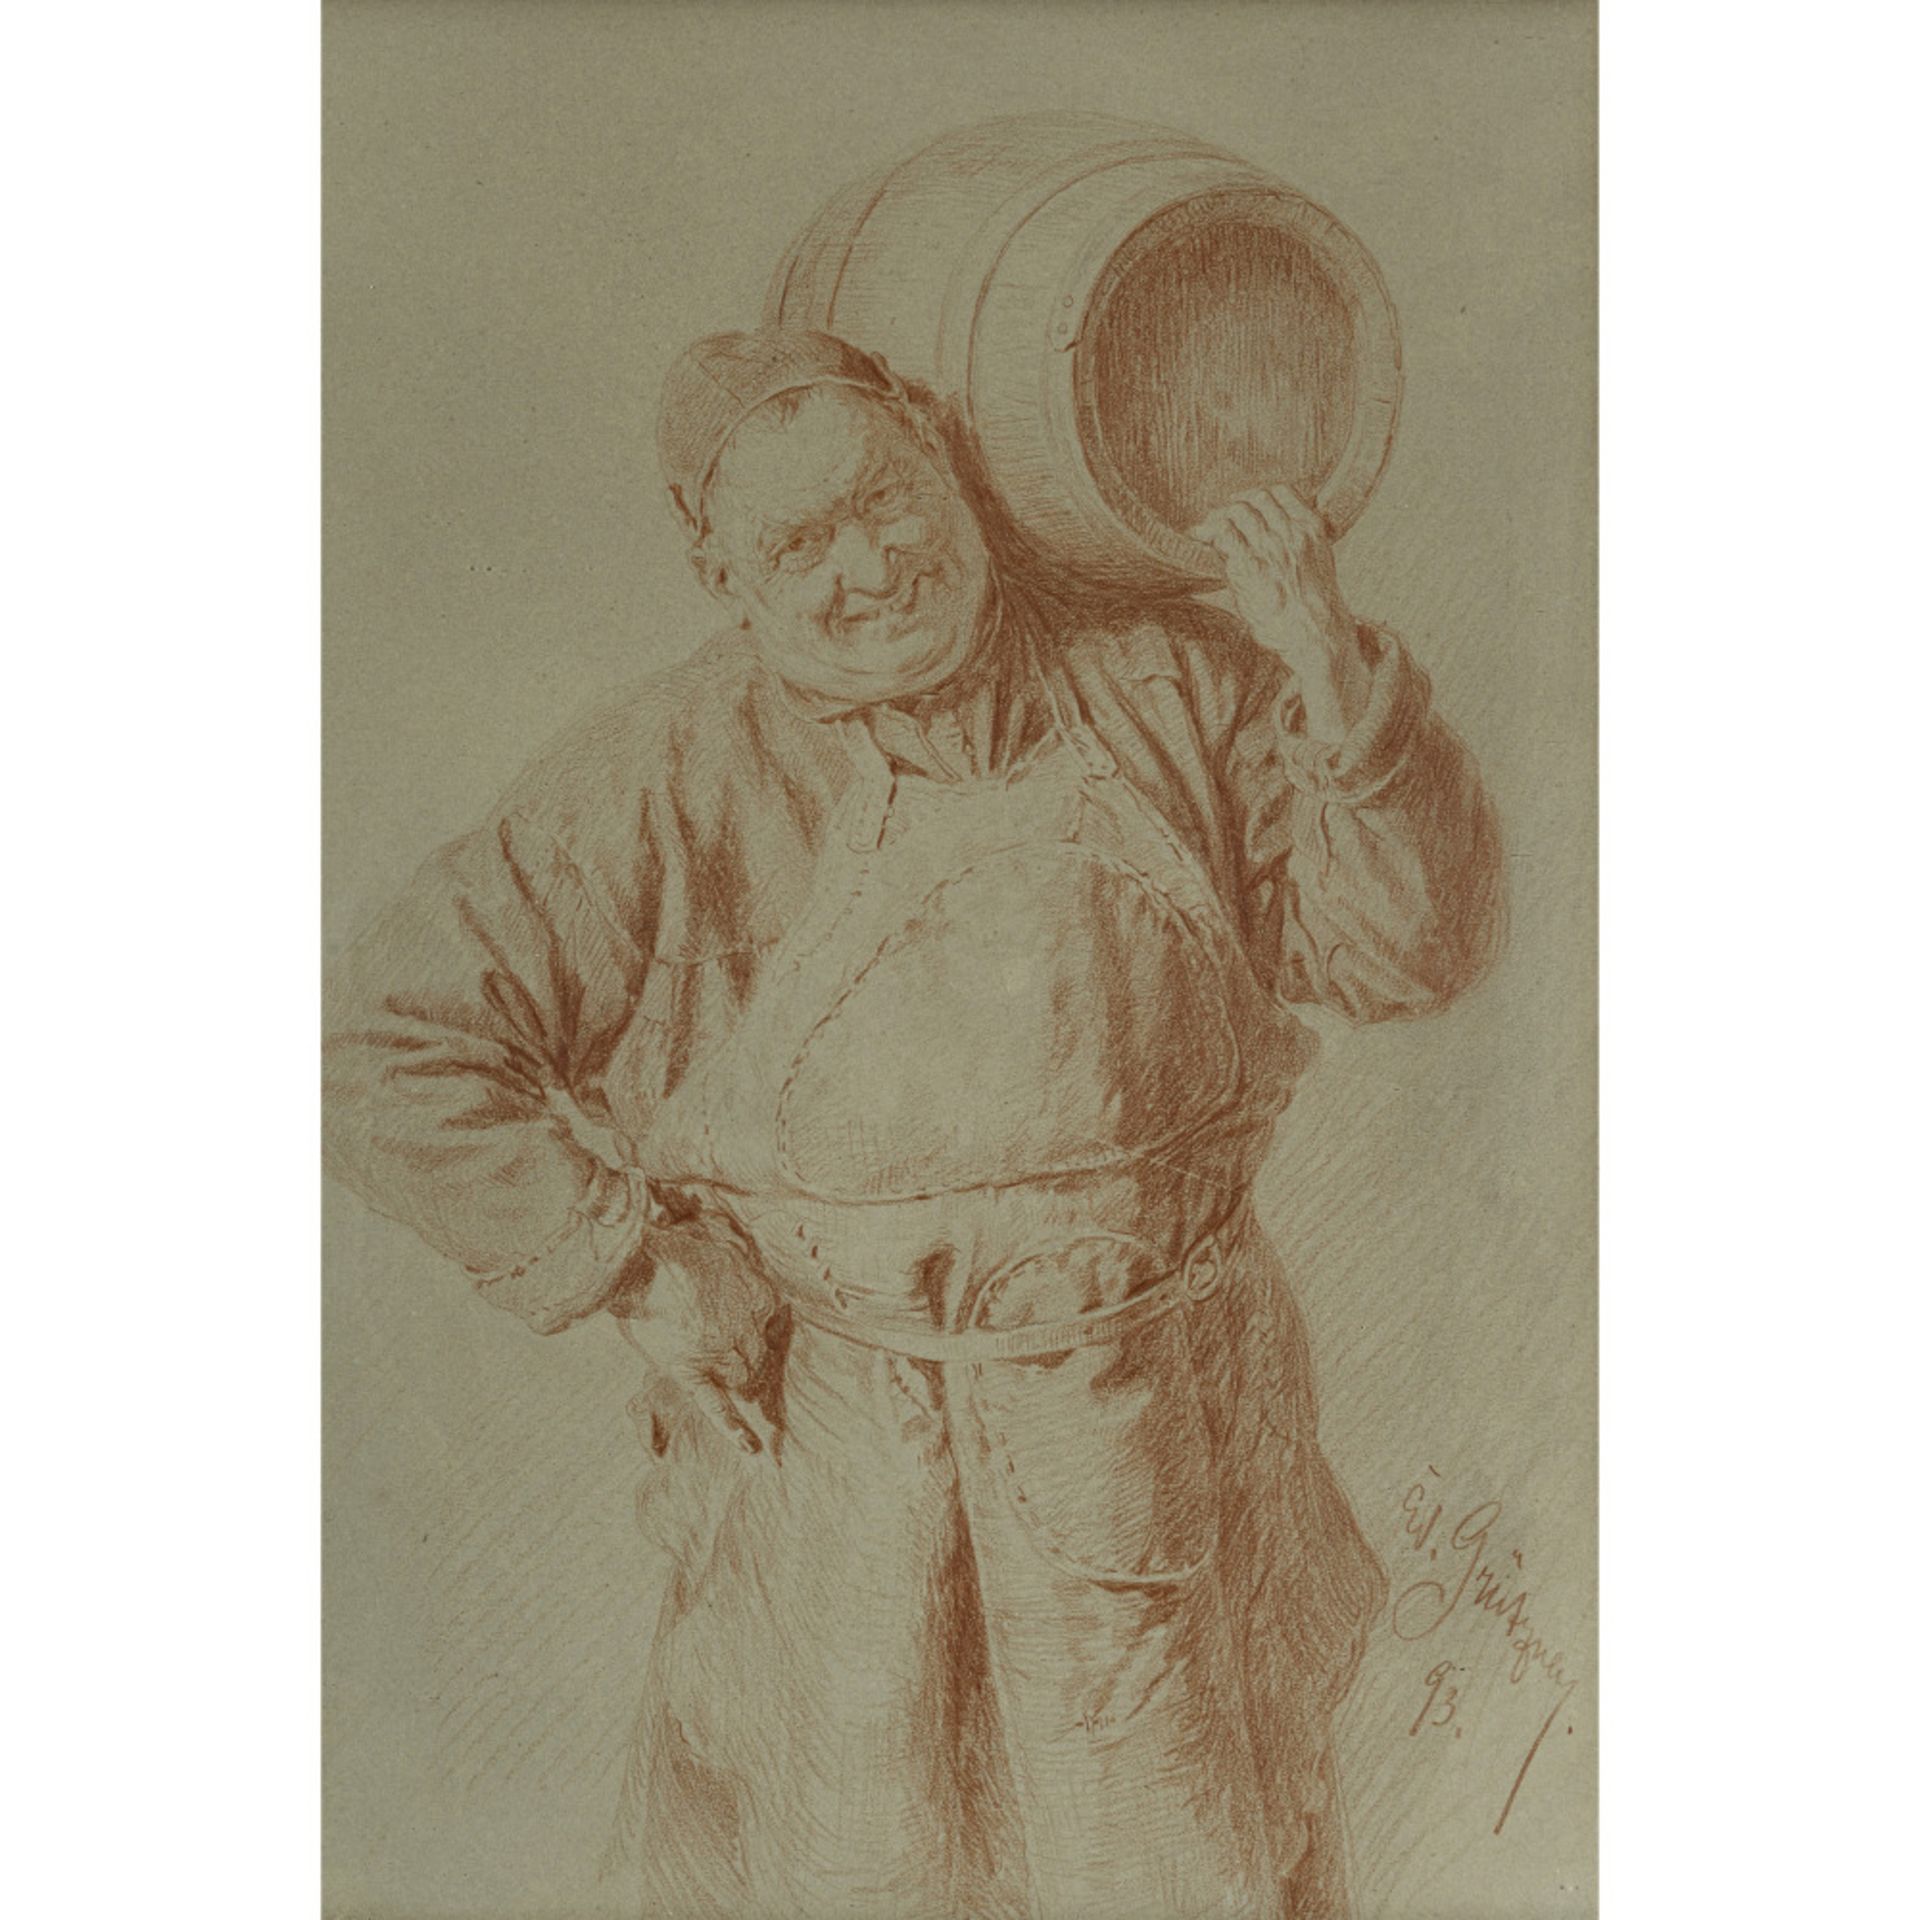 Eduard von Grützner - Monk with wine barrel